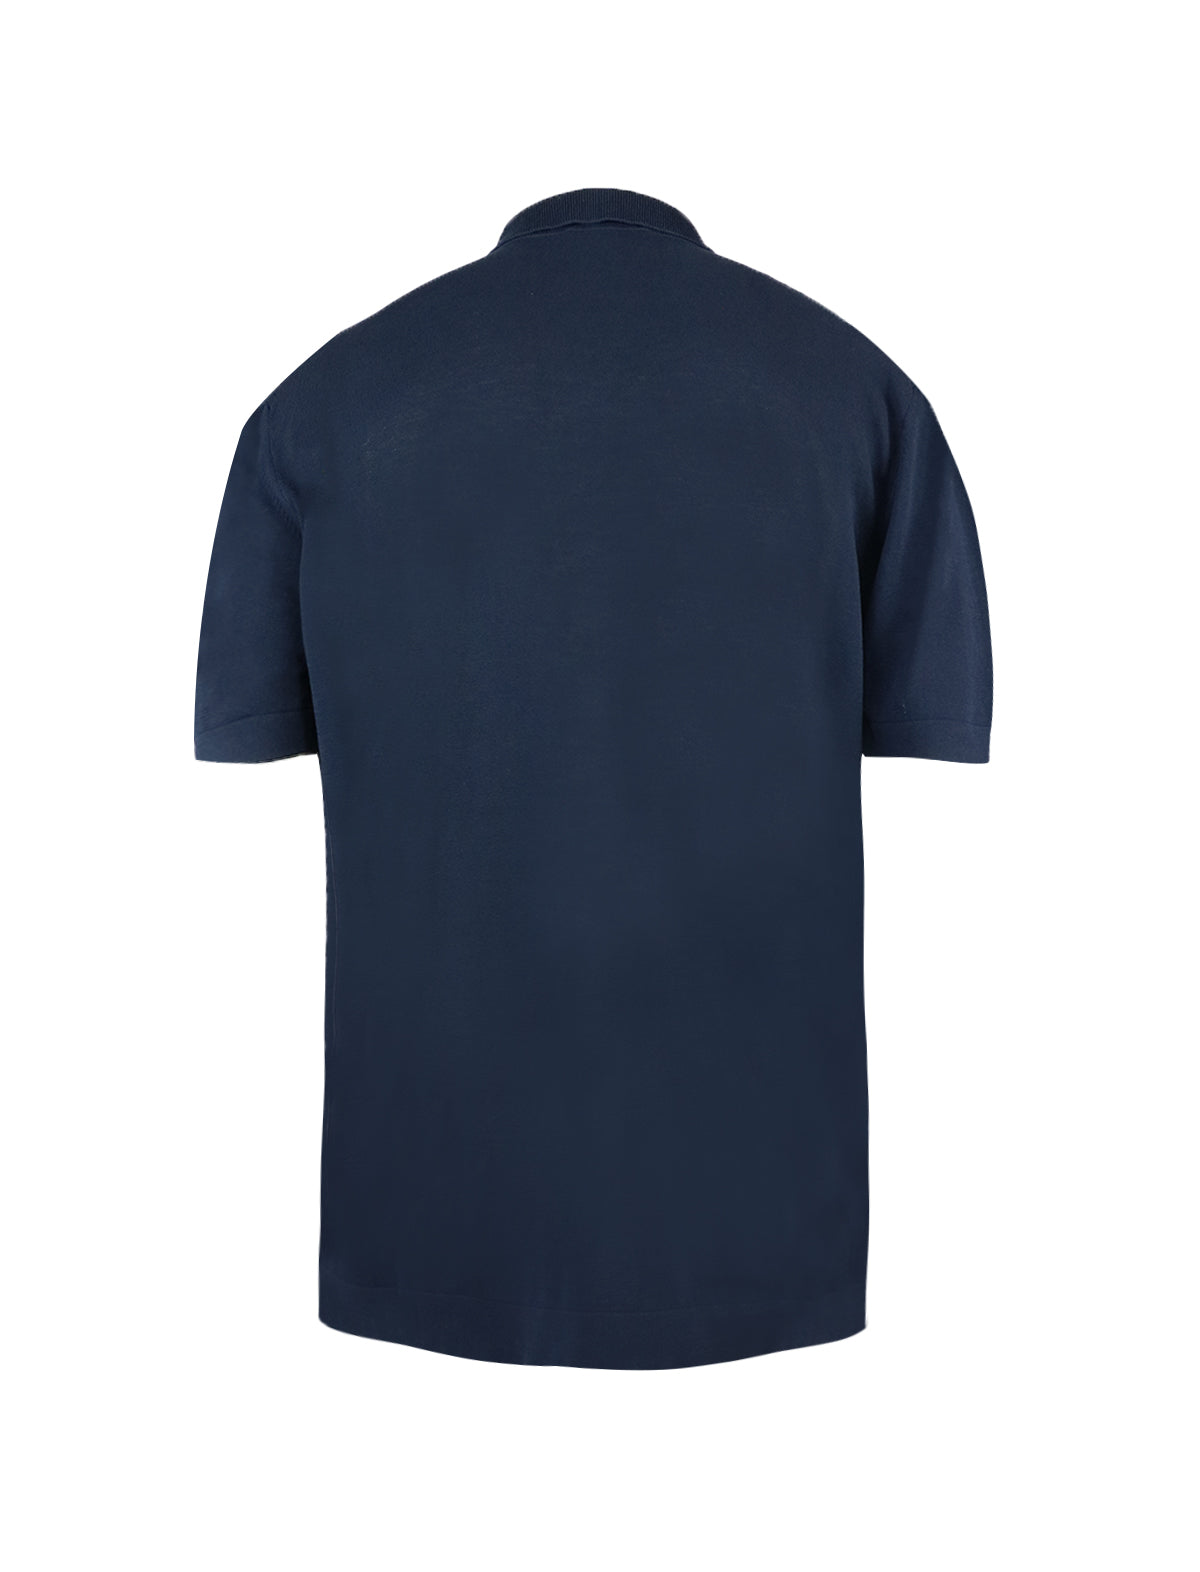 CIRCOLO 1901 Cotton Polo Shirt in Blue Black